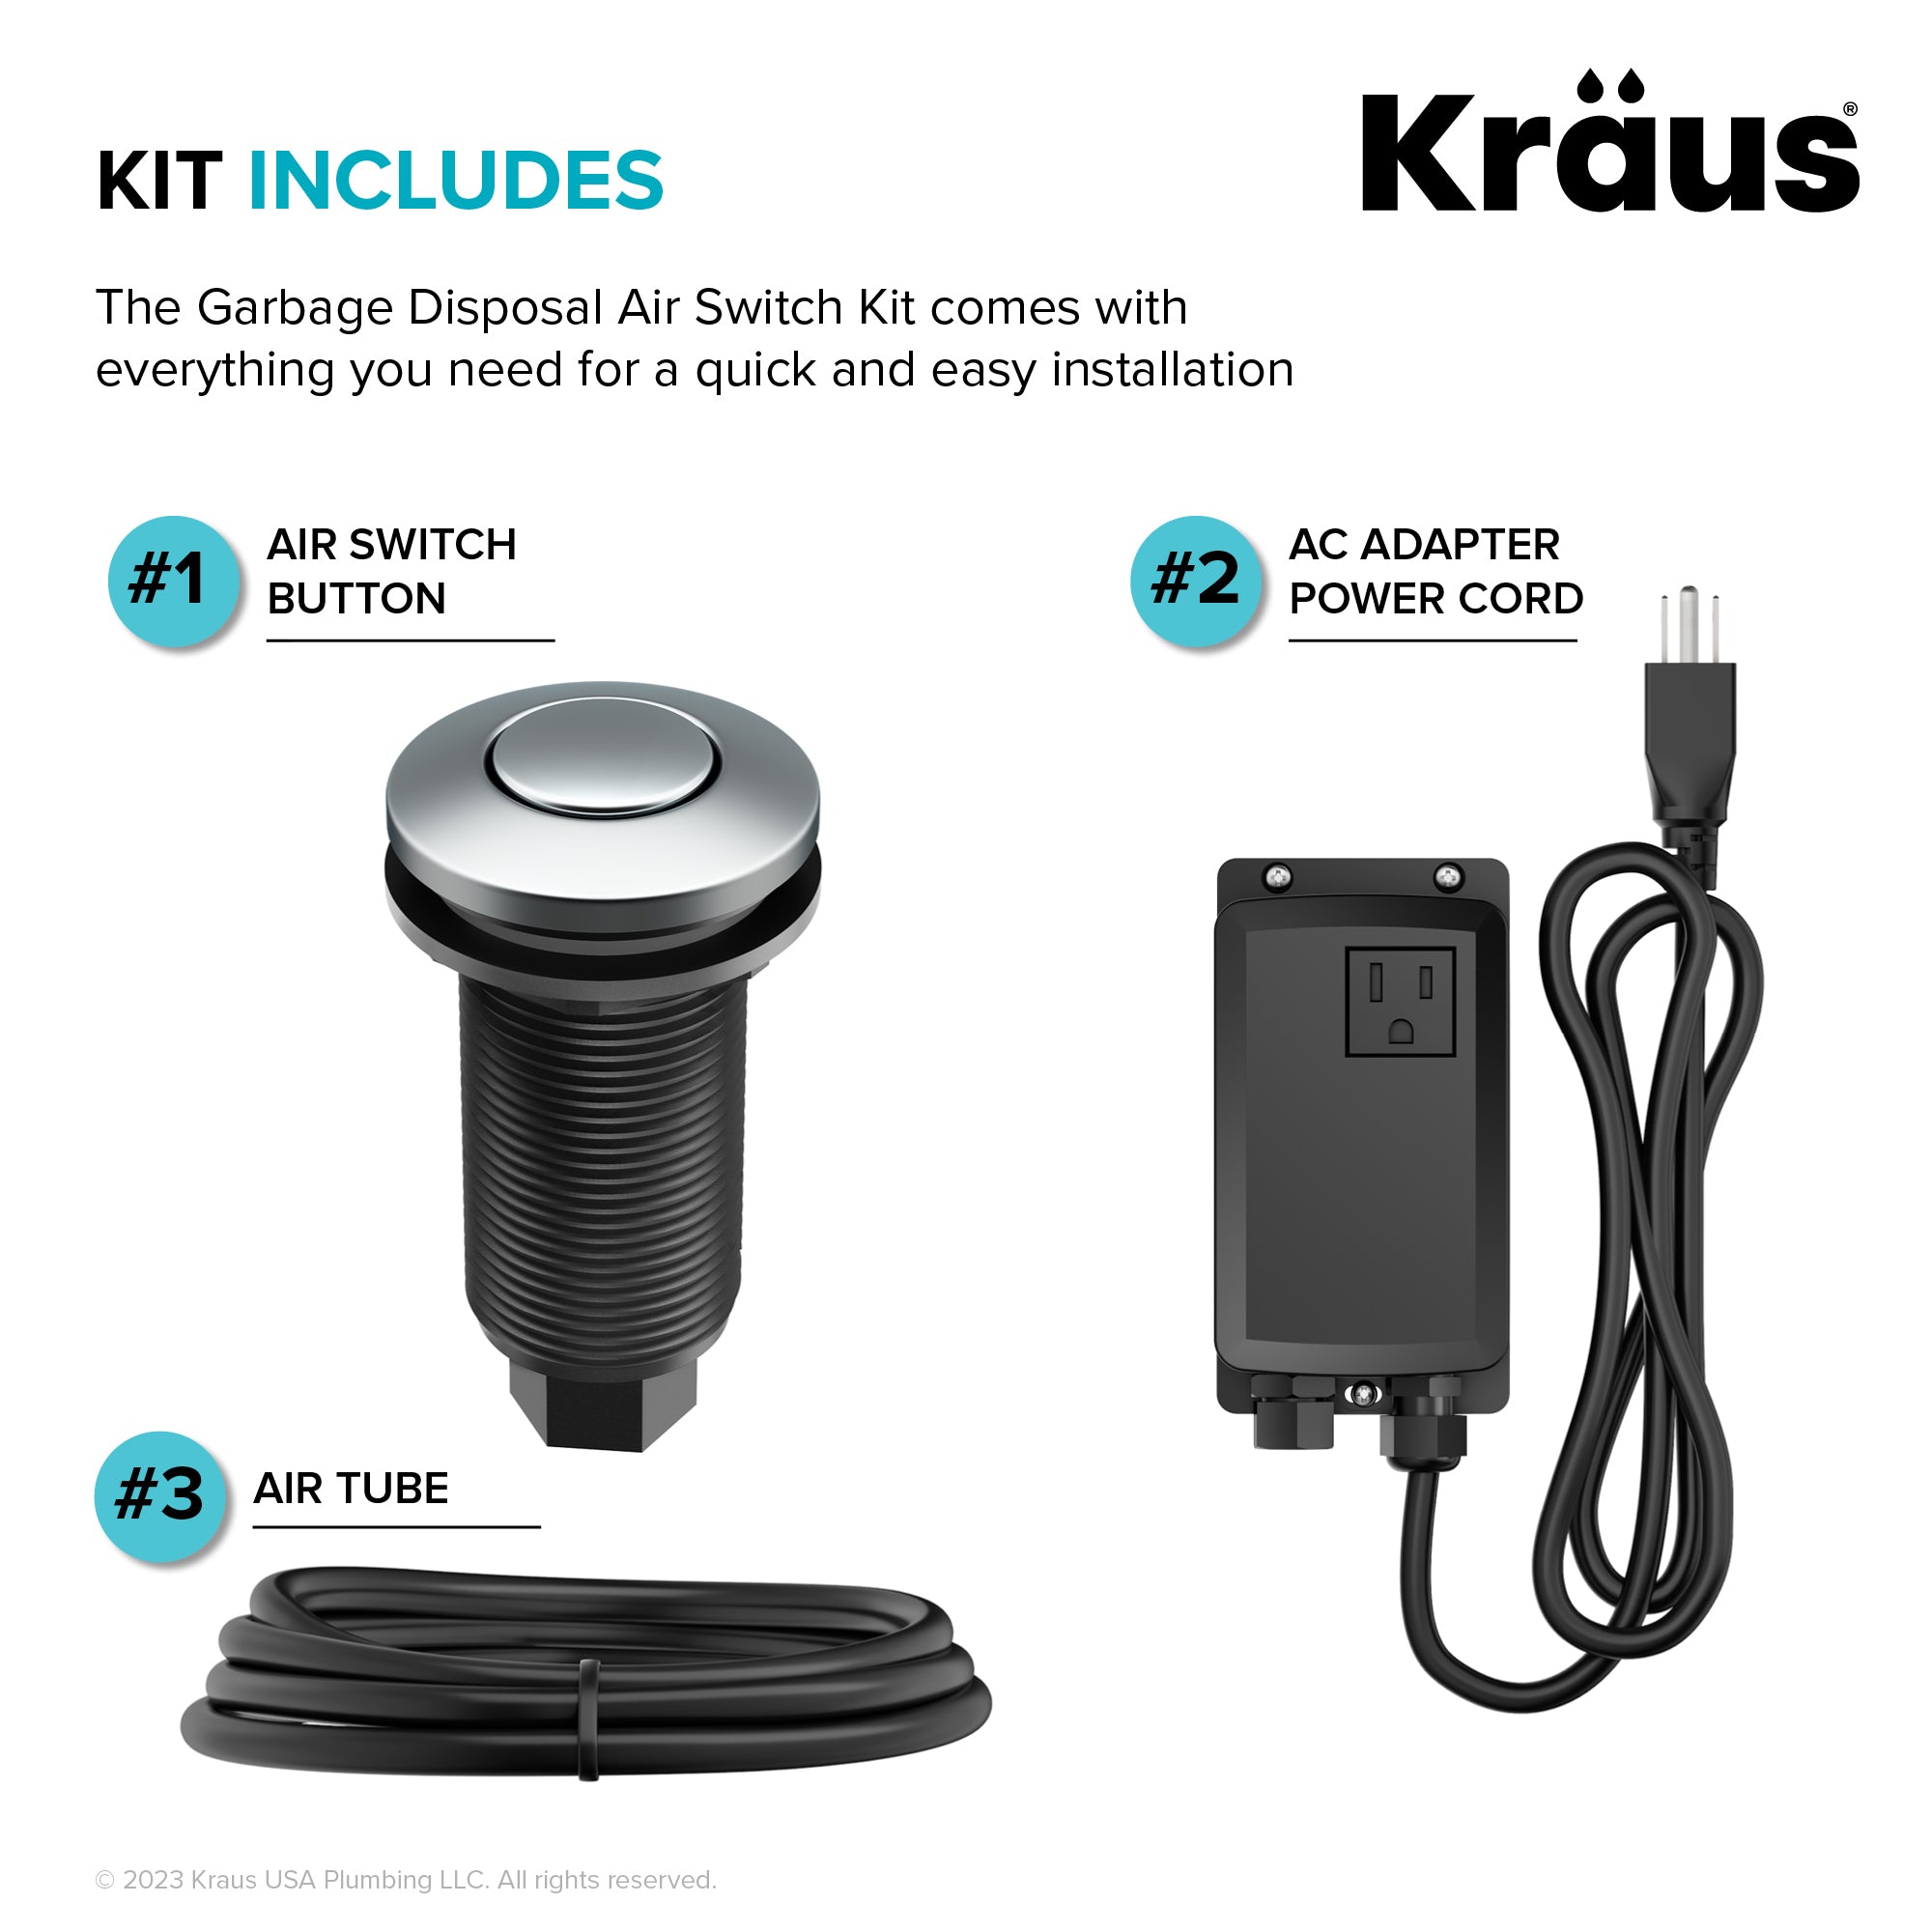 KRAUS Garbage Disposal Push Button Air Switch Kit in Chrome